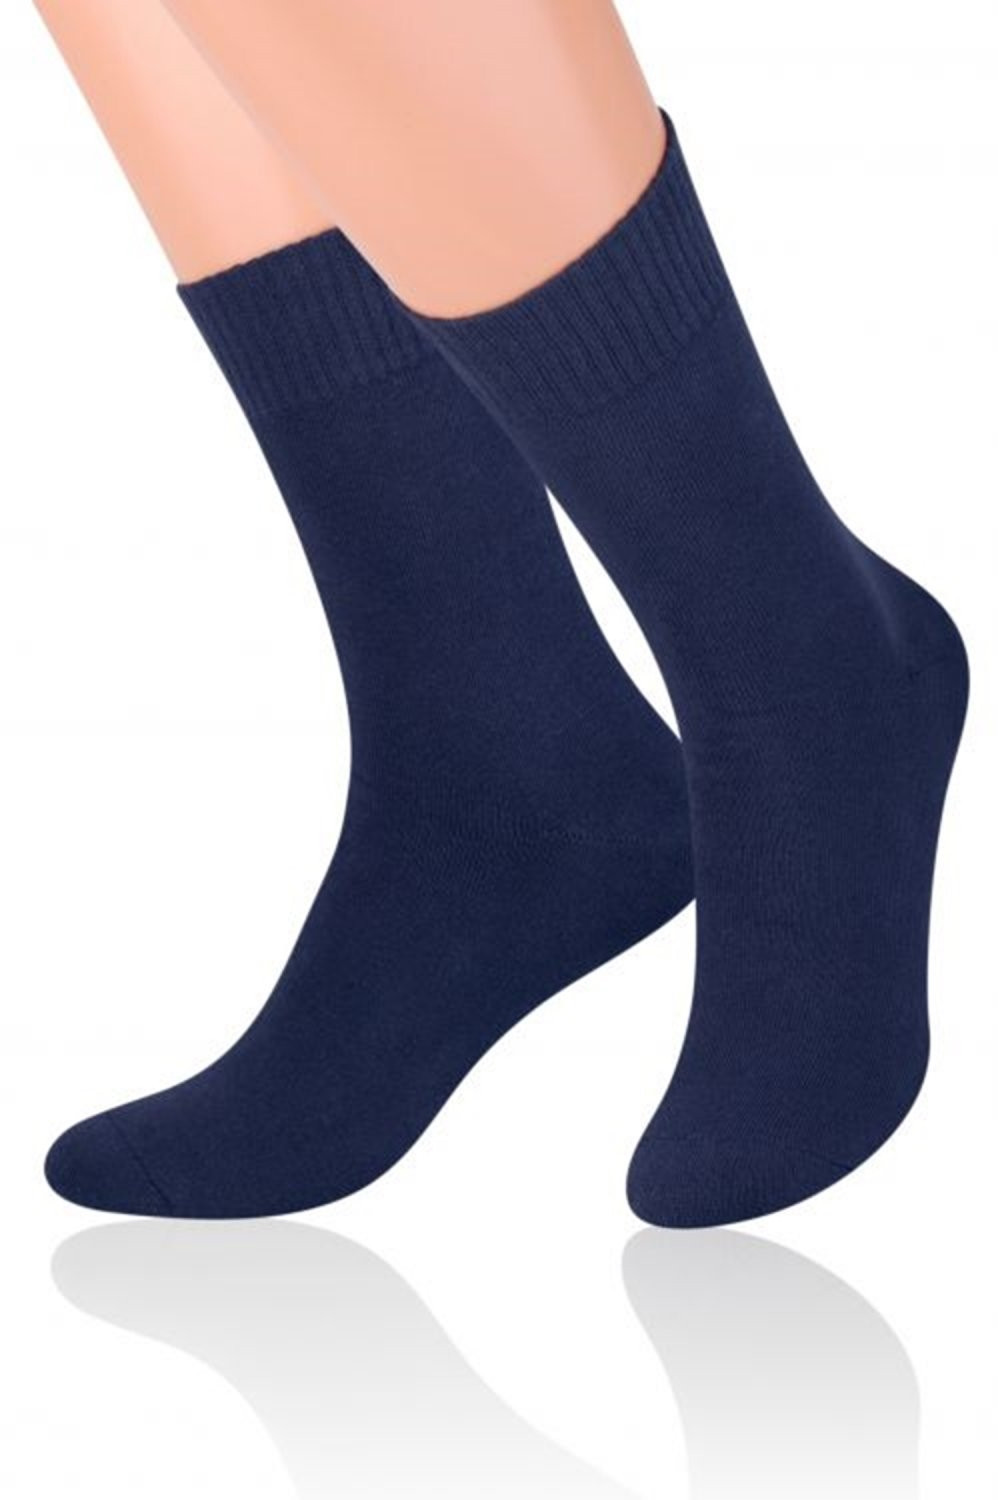 Pánské ponožky 015 Frotte dark blue - Steven tmavě modrá 44/46